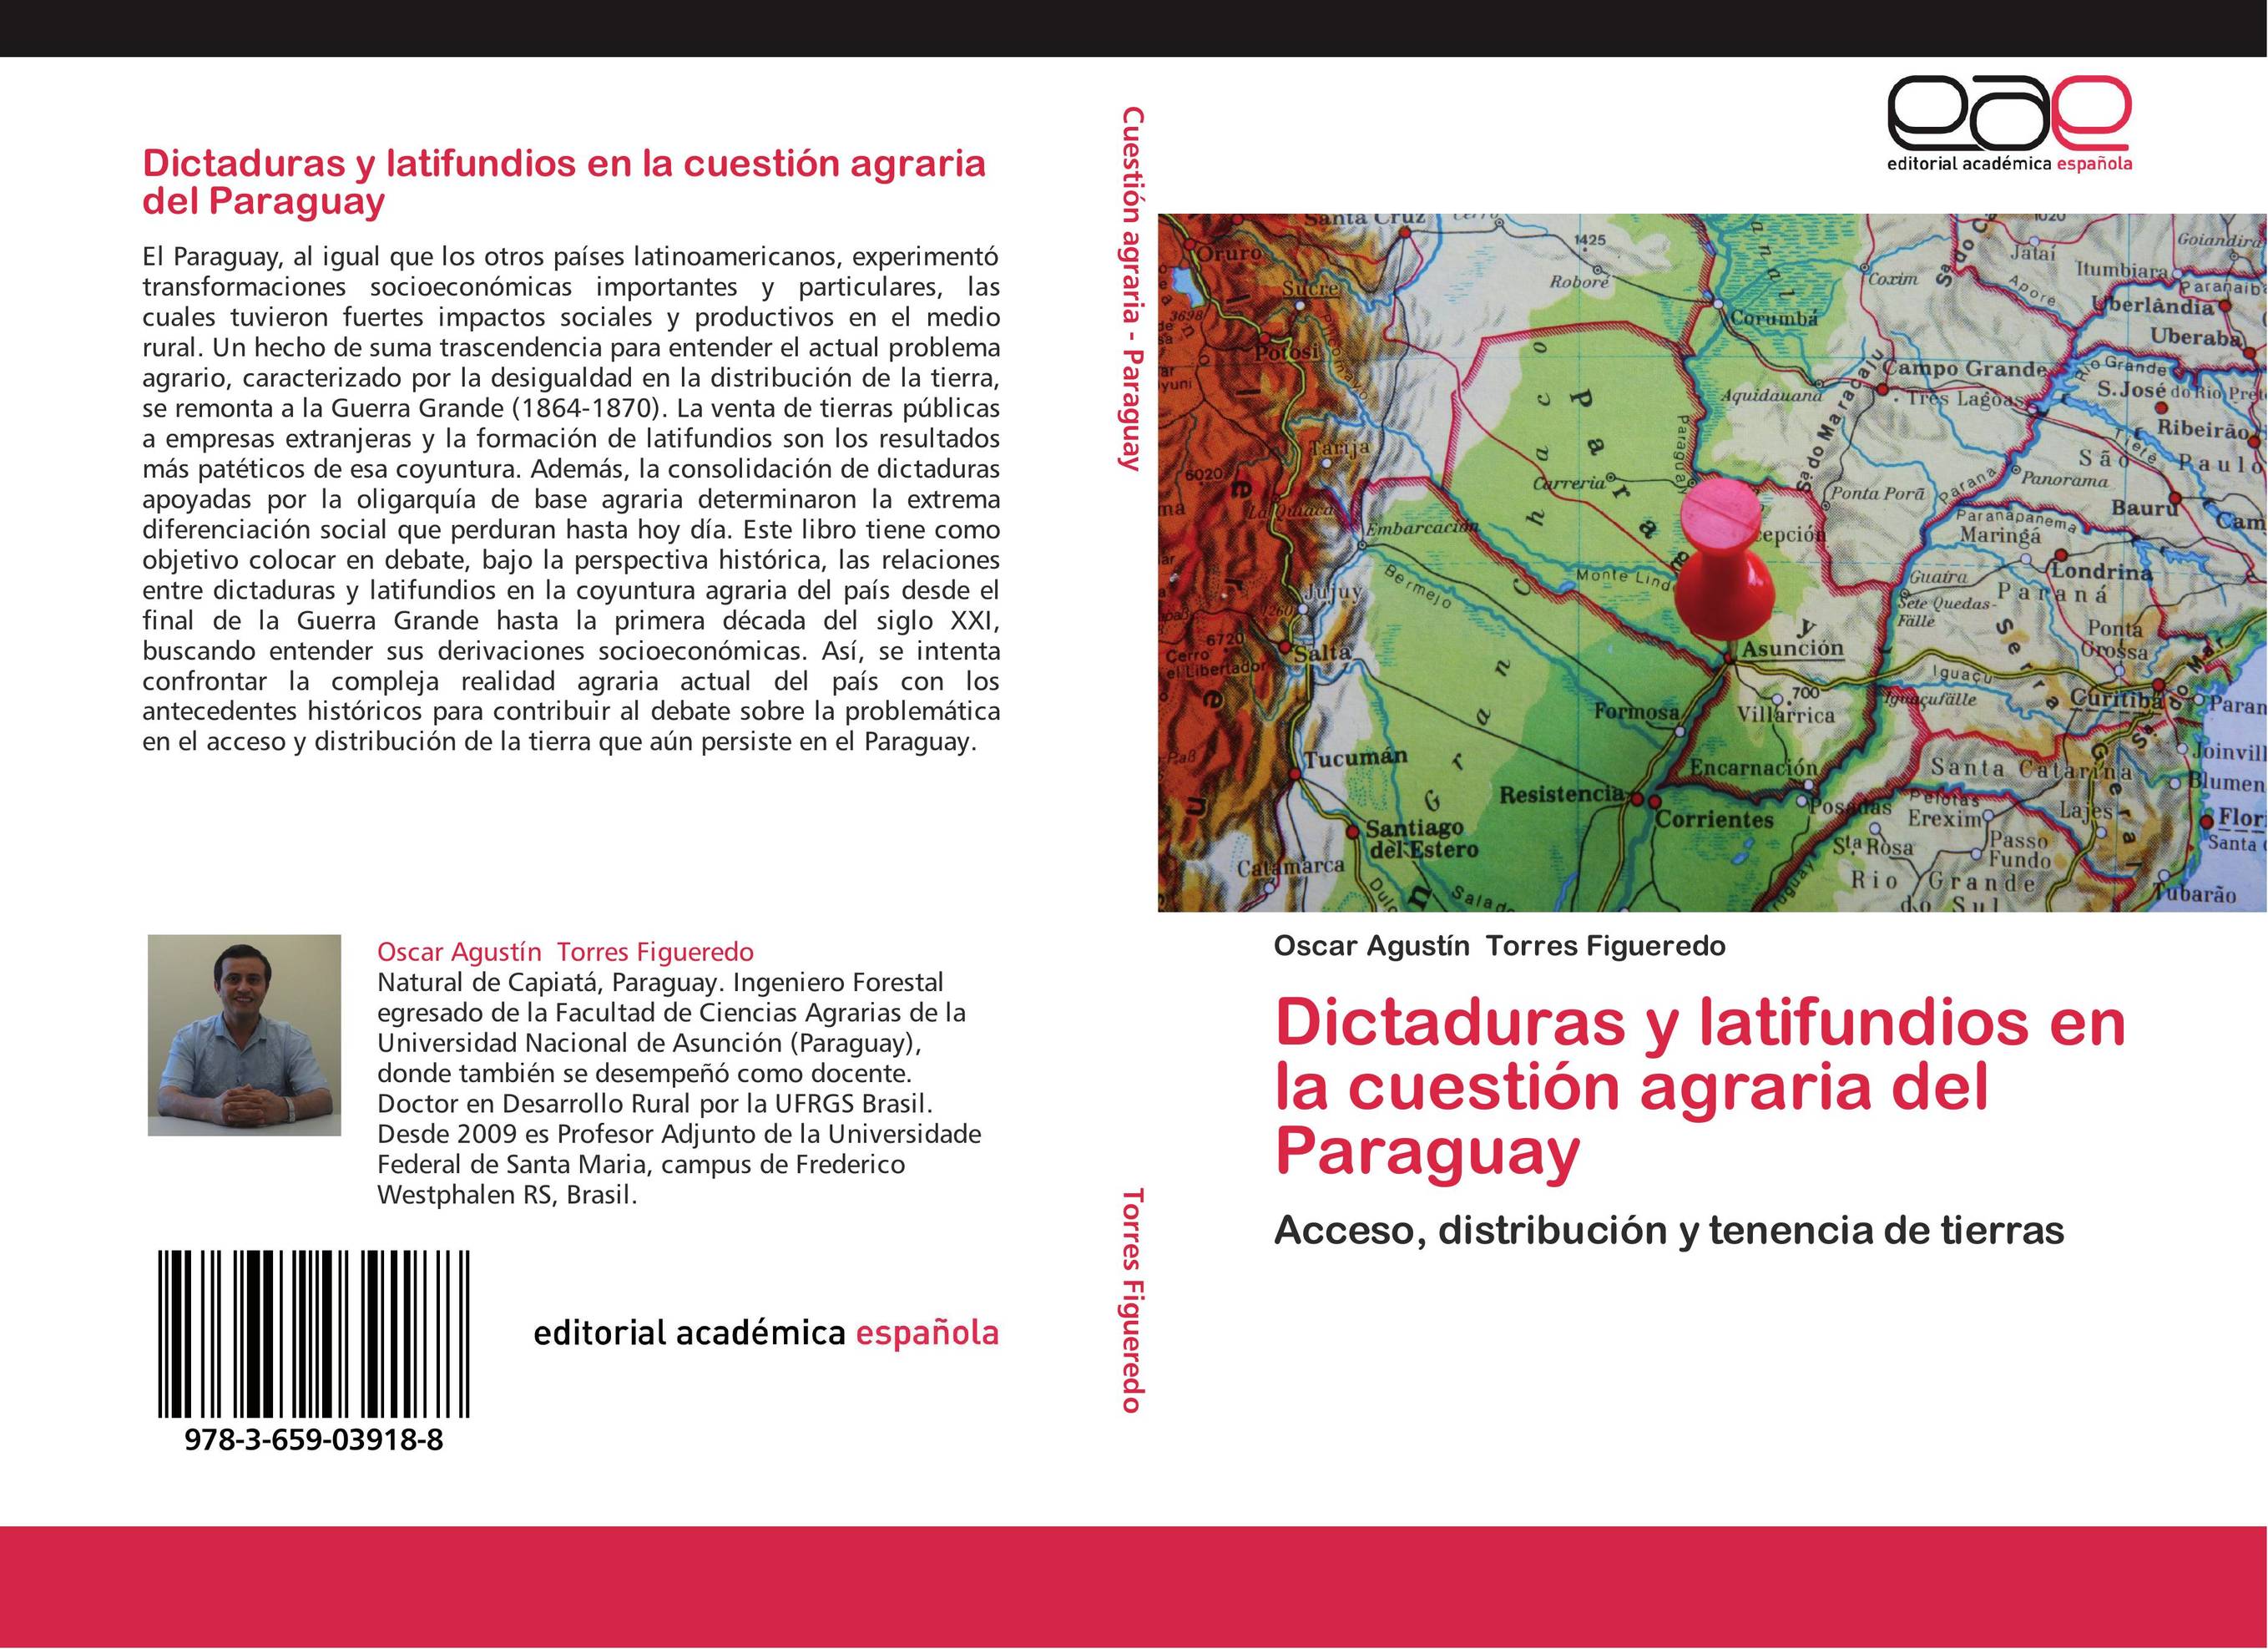 Dictaduras y latifundios en la cuestión agraria del Paraguay